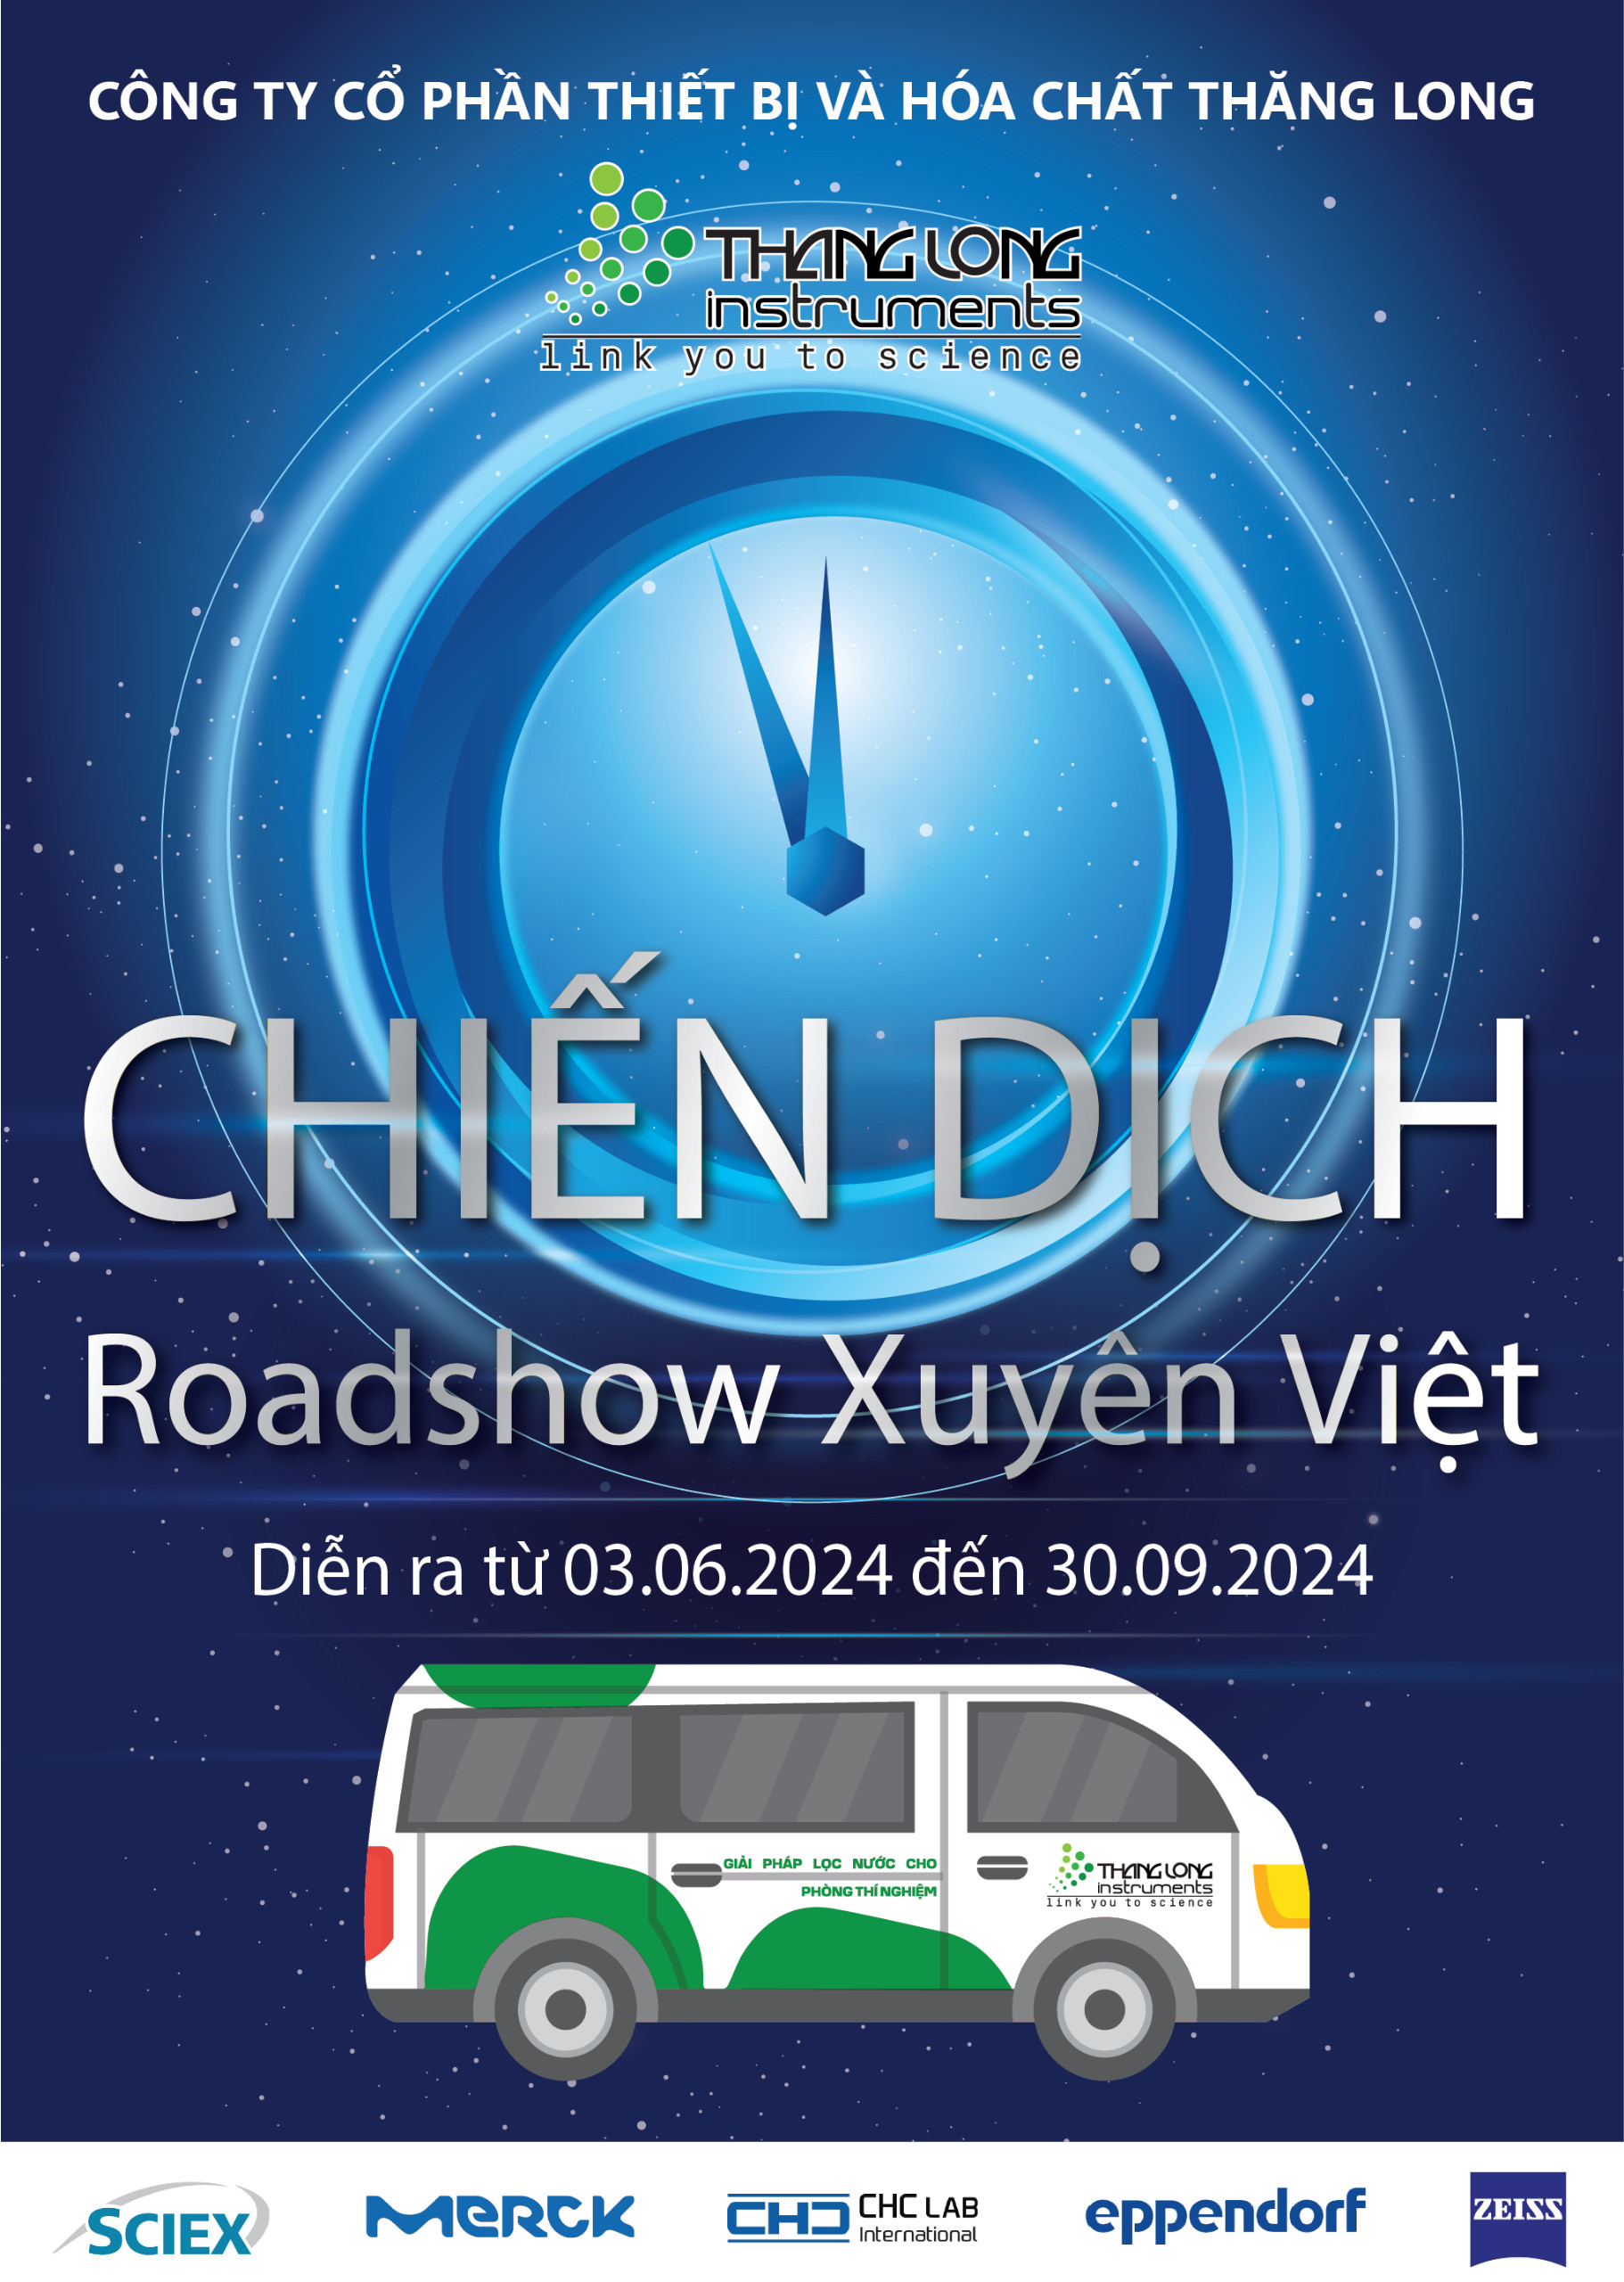 Đăng ký Tham gia chiến dịch Roadshow Xuyên Việt 